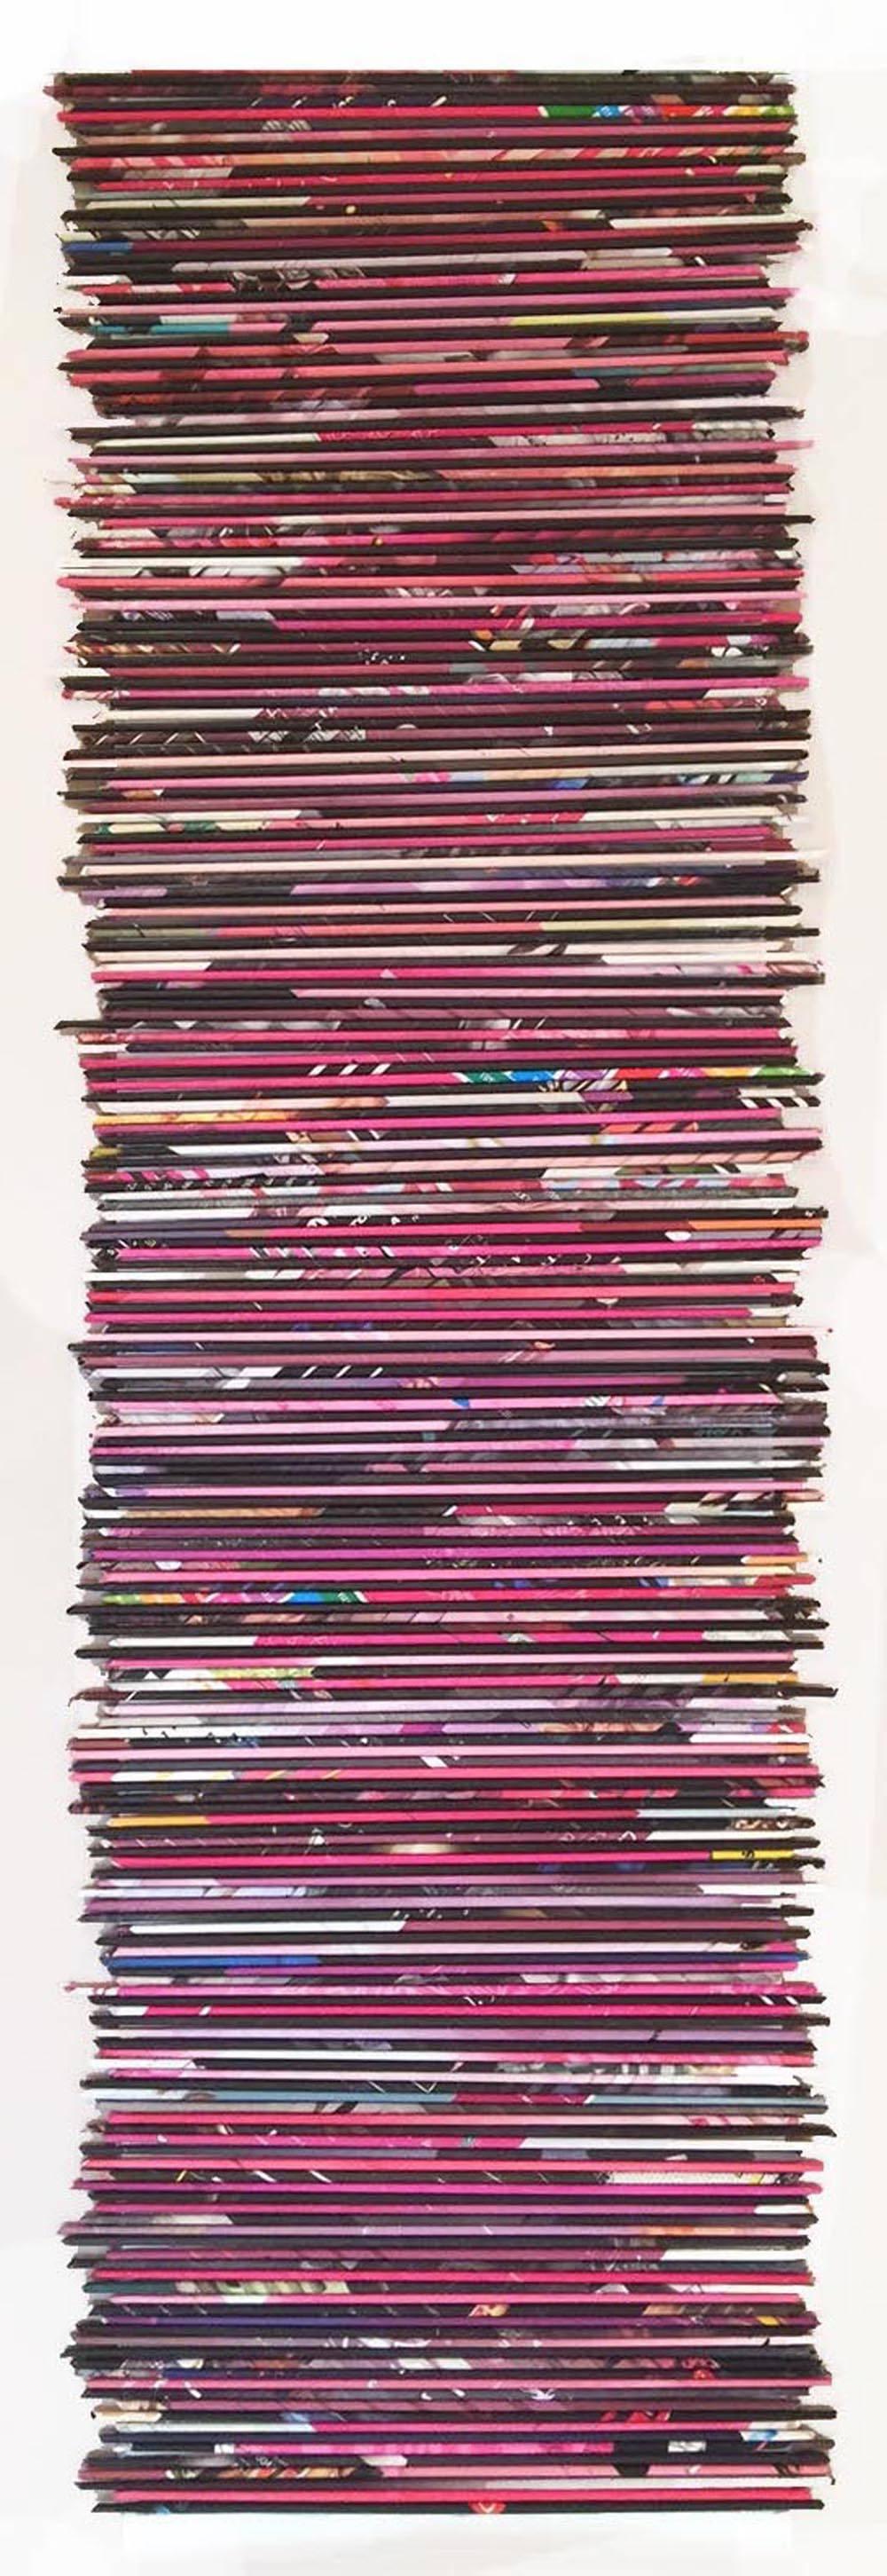 Pink - Stairs to the Rainbow - Contemporary Mixed Media Art by Alejandra Padilla